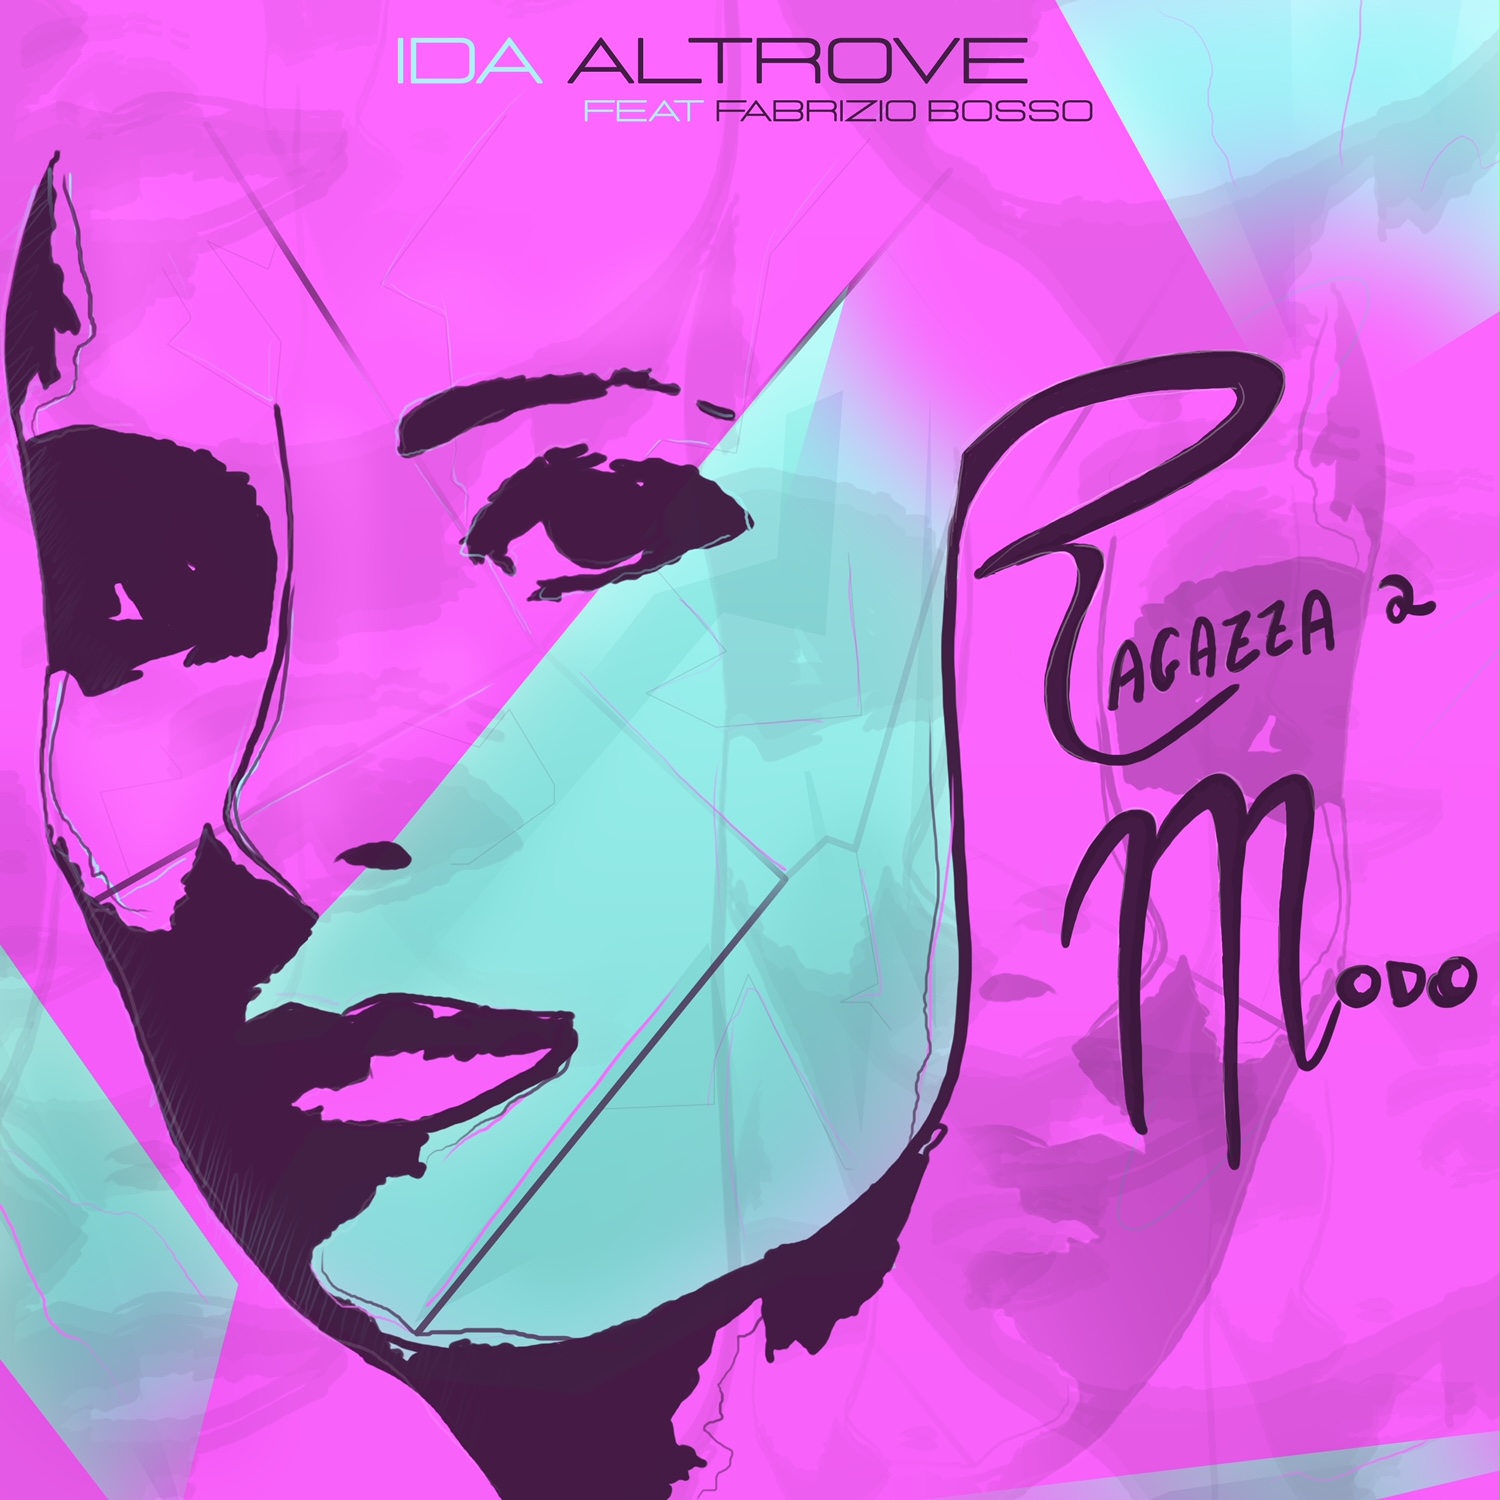 Scopri di più sull'articolo Ida Altrove, “Ragazza a modo” è il nuovo singolo feat. Fabrizio Bosso